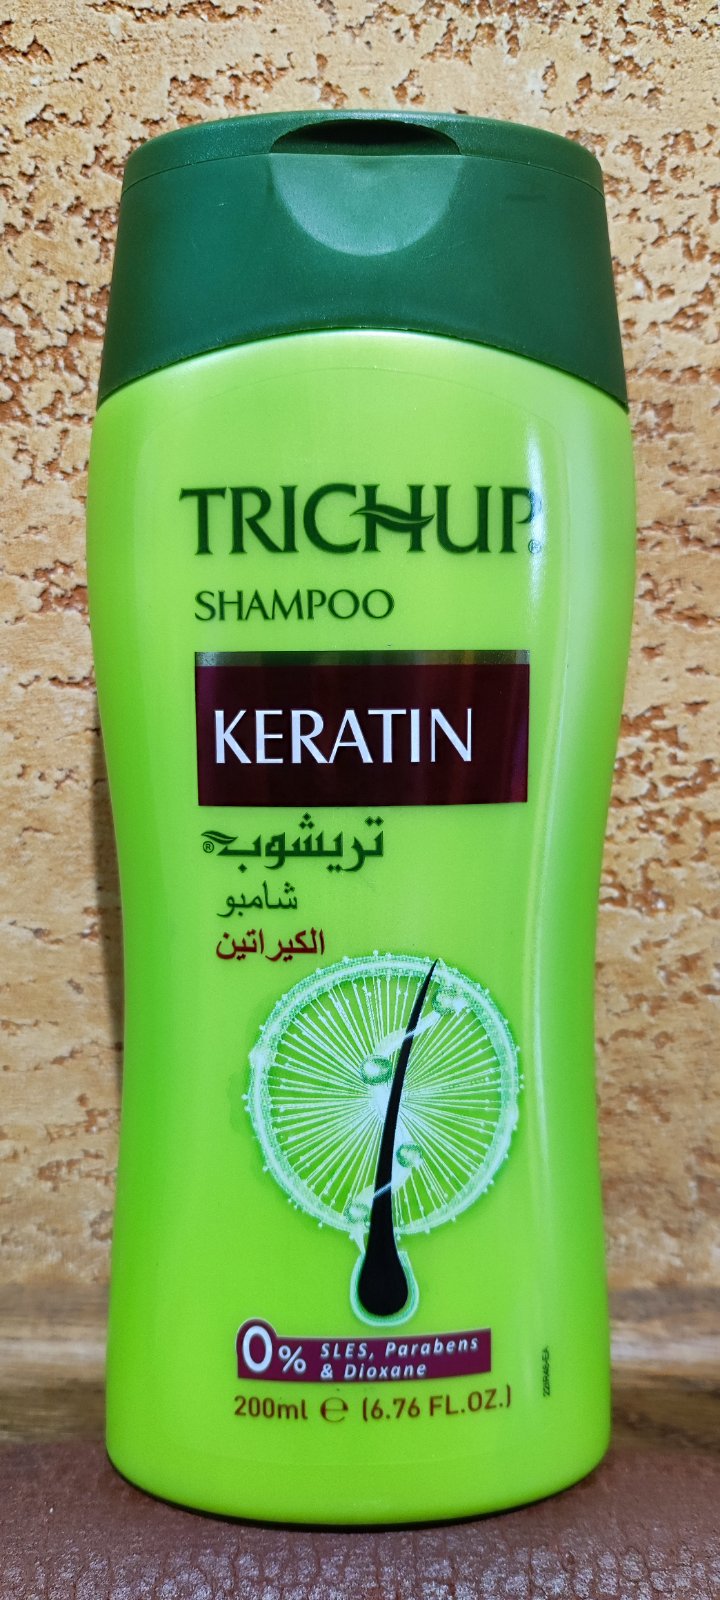 Тричуп Шампунь Кератин 200 мл Trichup Shampoo Keratin Укрепляет Восстанавливает структуру волос Блеск Индия